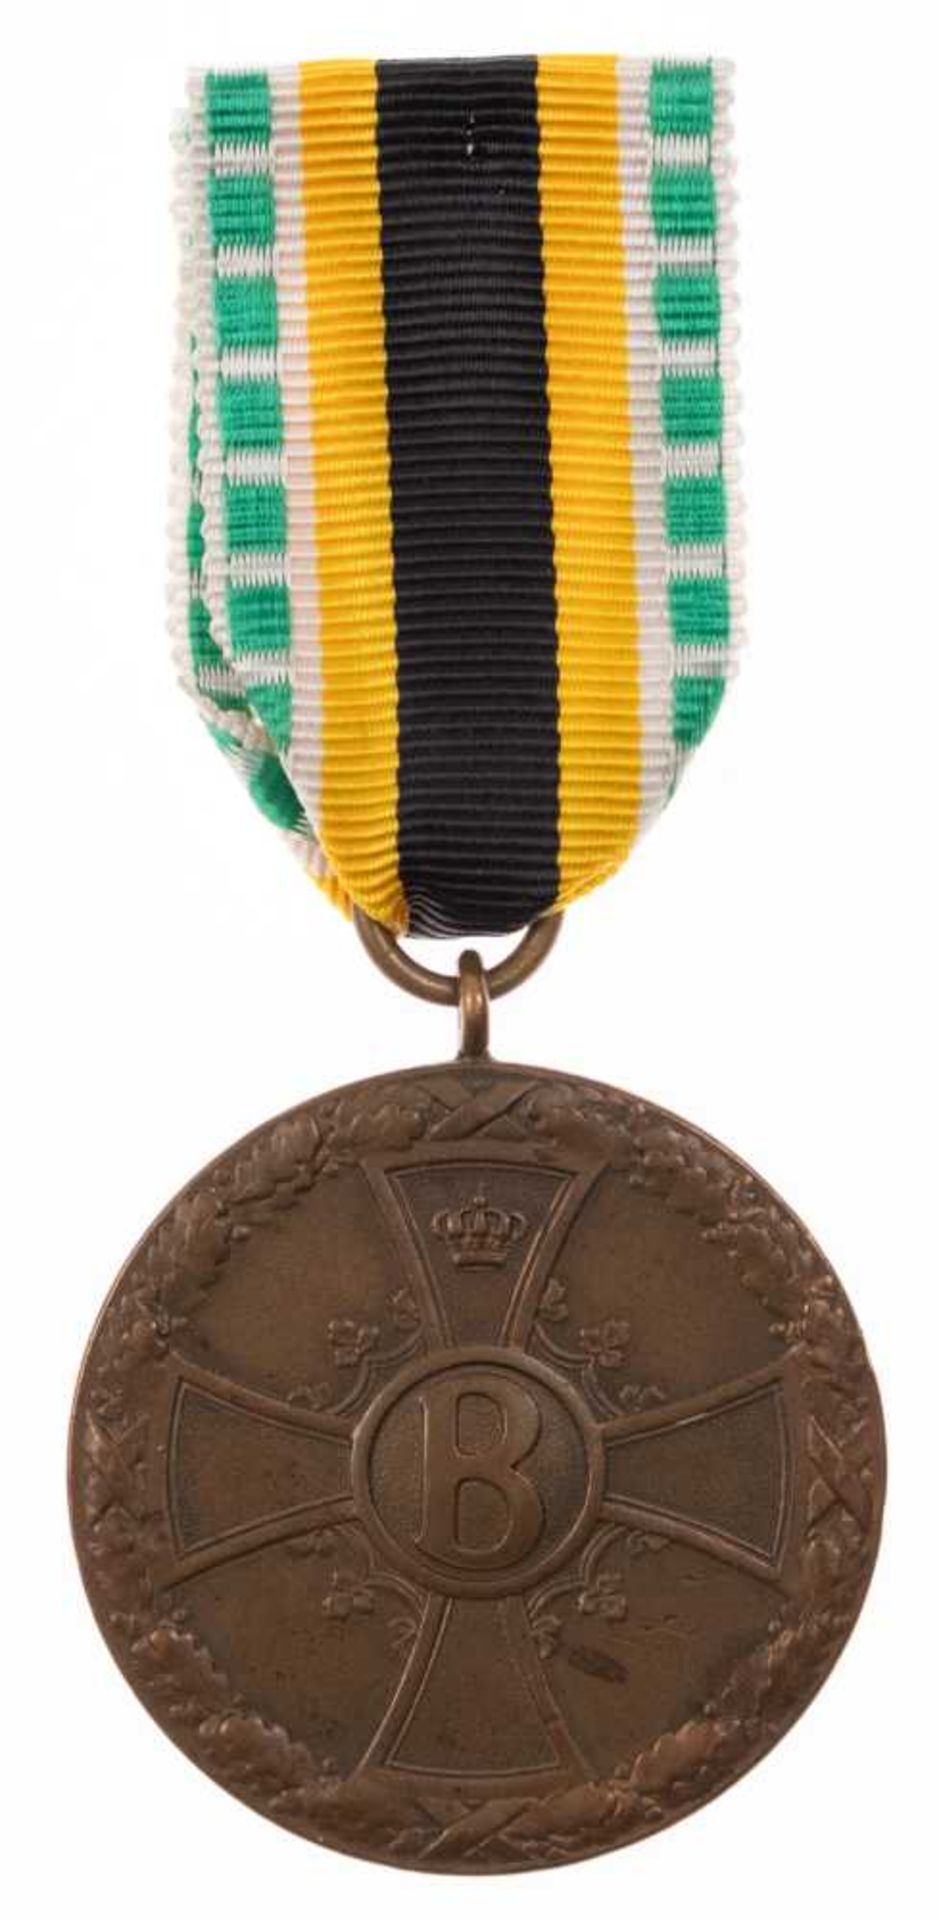 Sachsen-Meiningen, Medaille für Verdienst im Kriege, Bonze, am Kämpferband, OEK 2718, Zustand 2.